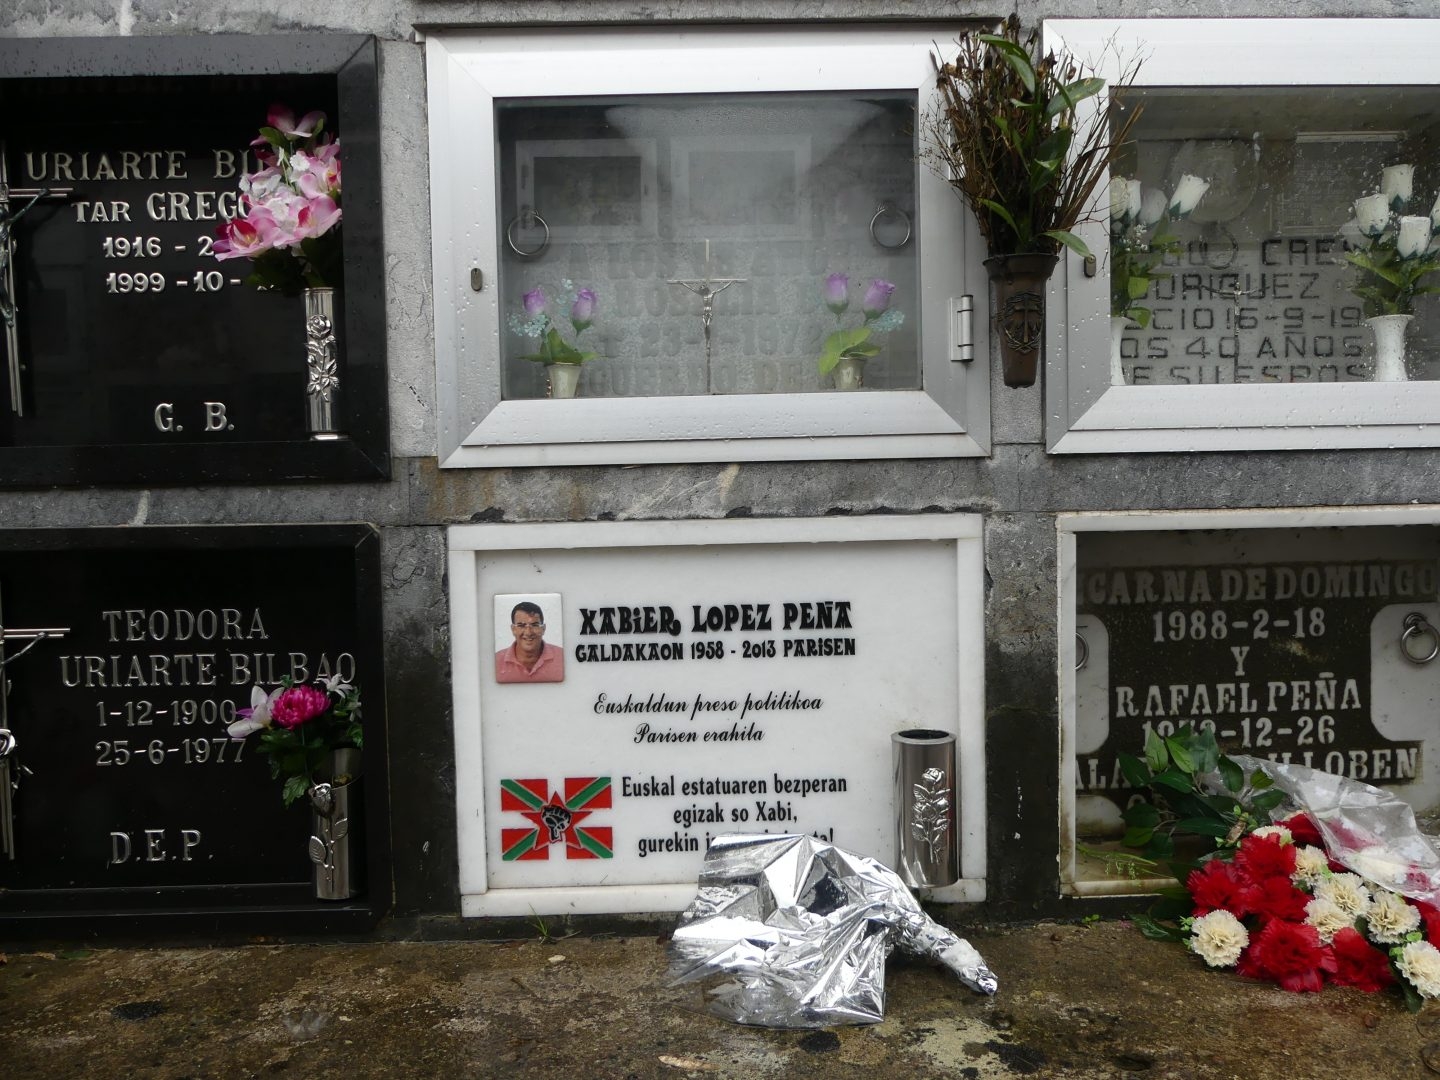 Imagen de la lápida del nicho en el que reposan los restos de Javier López Peña, 'Thierry', ex jefe militar de ETA.